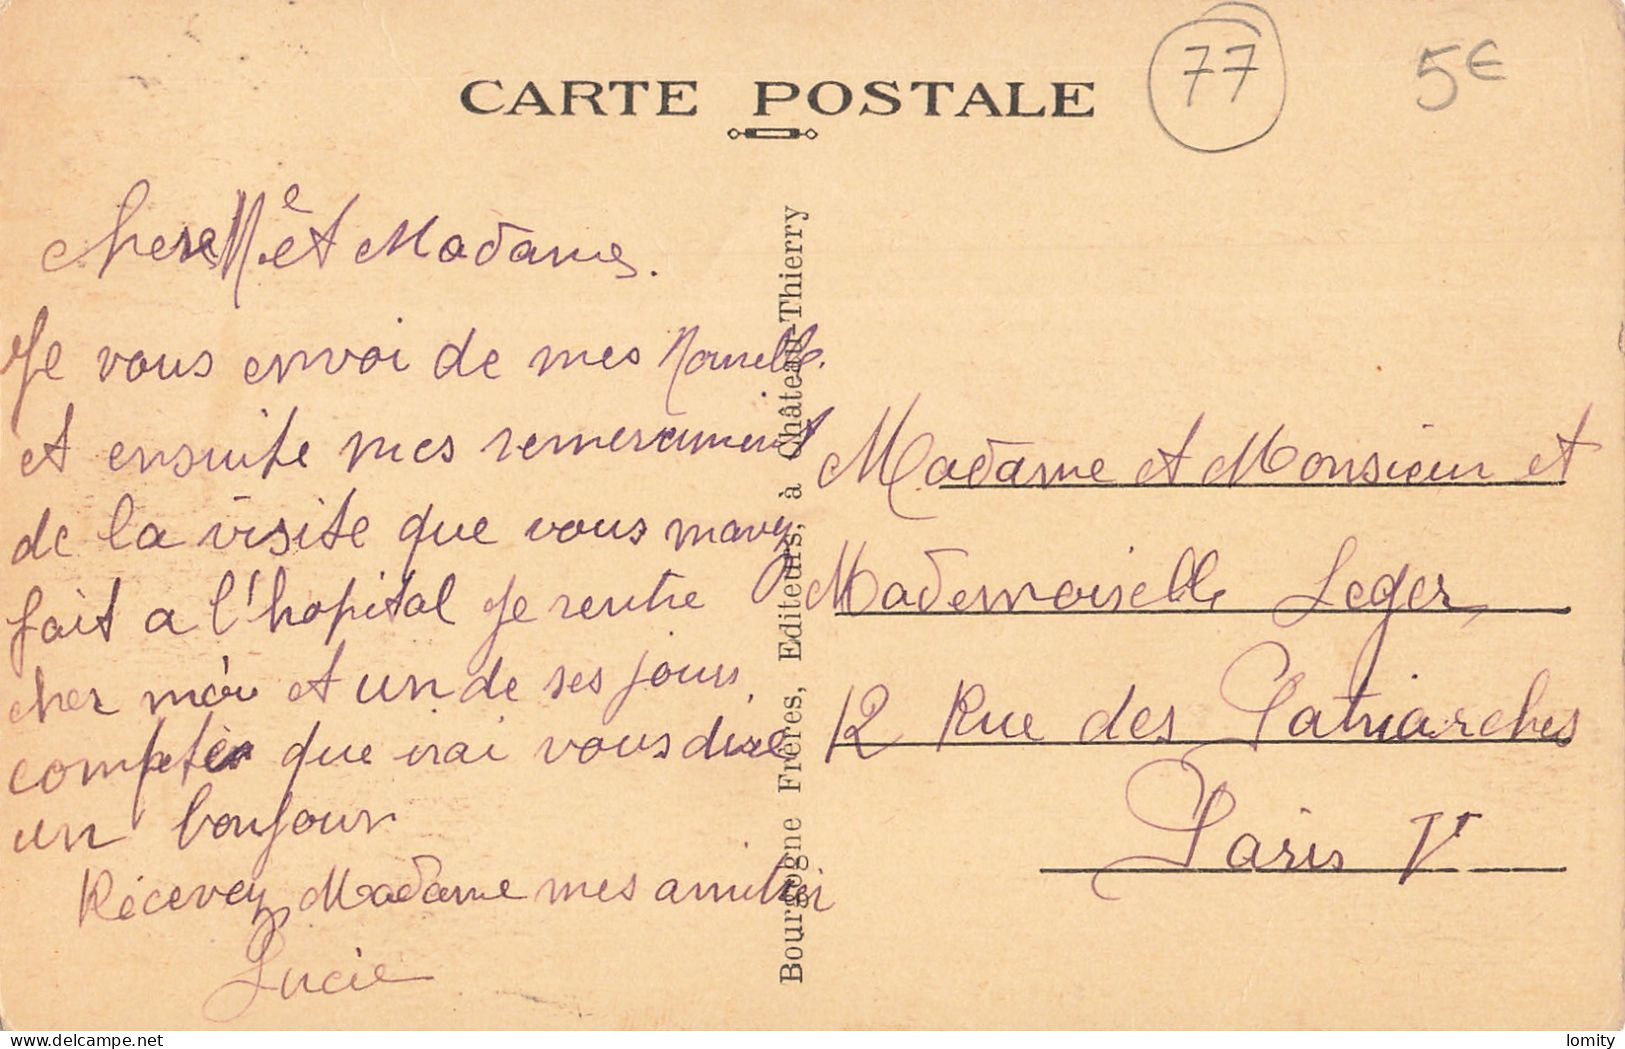 Destockage lot de 13 cartes postales CPA Seine et Marne Lagny Ferrieres en Brie Fontainebleau Dammarie les Lys Melun